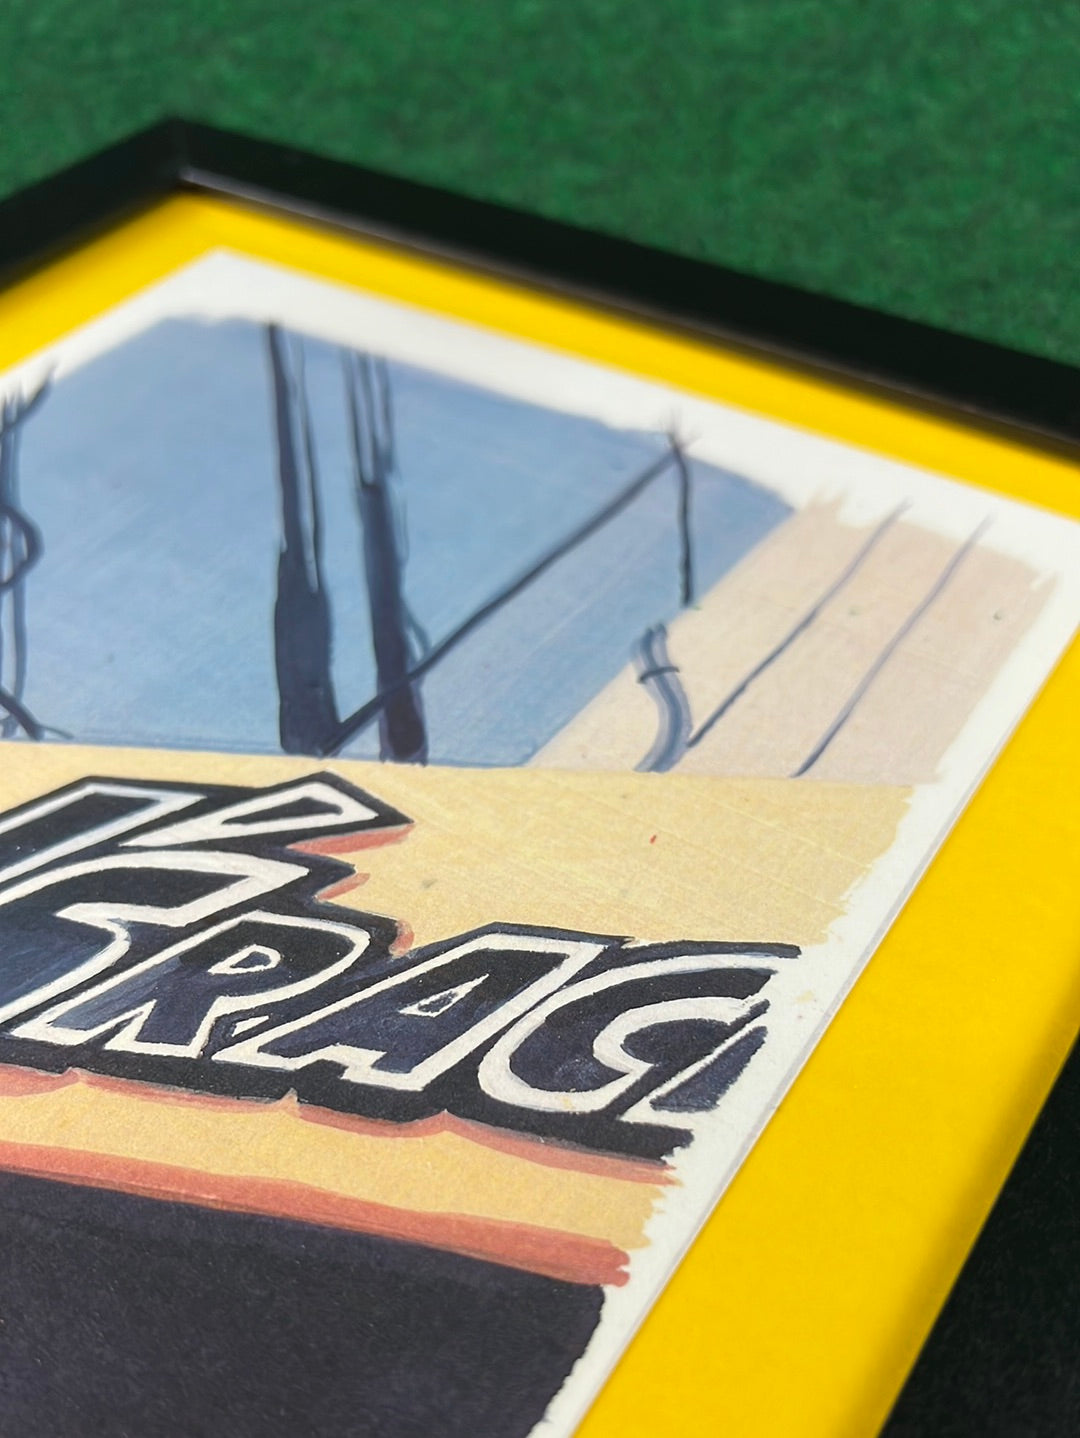 J’s Racing Building Sign Japan - Framed Print